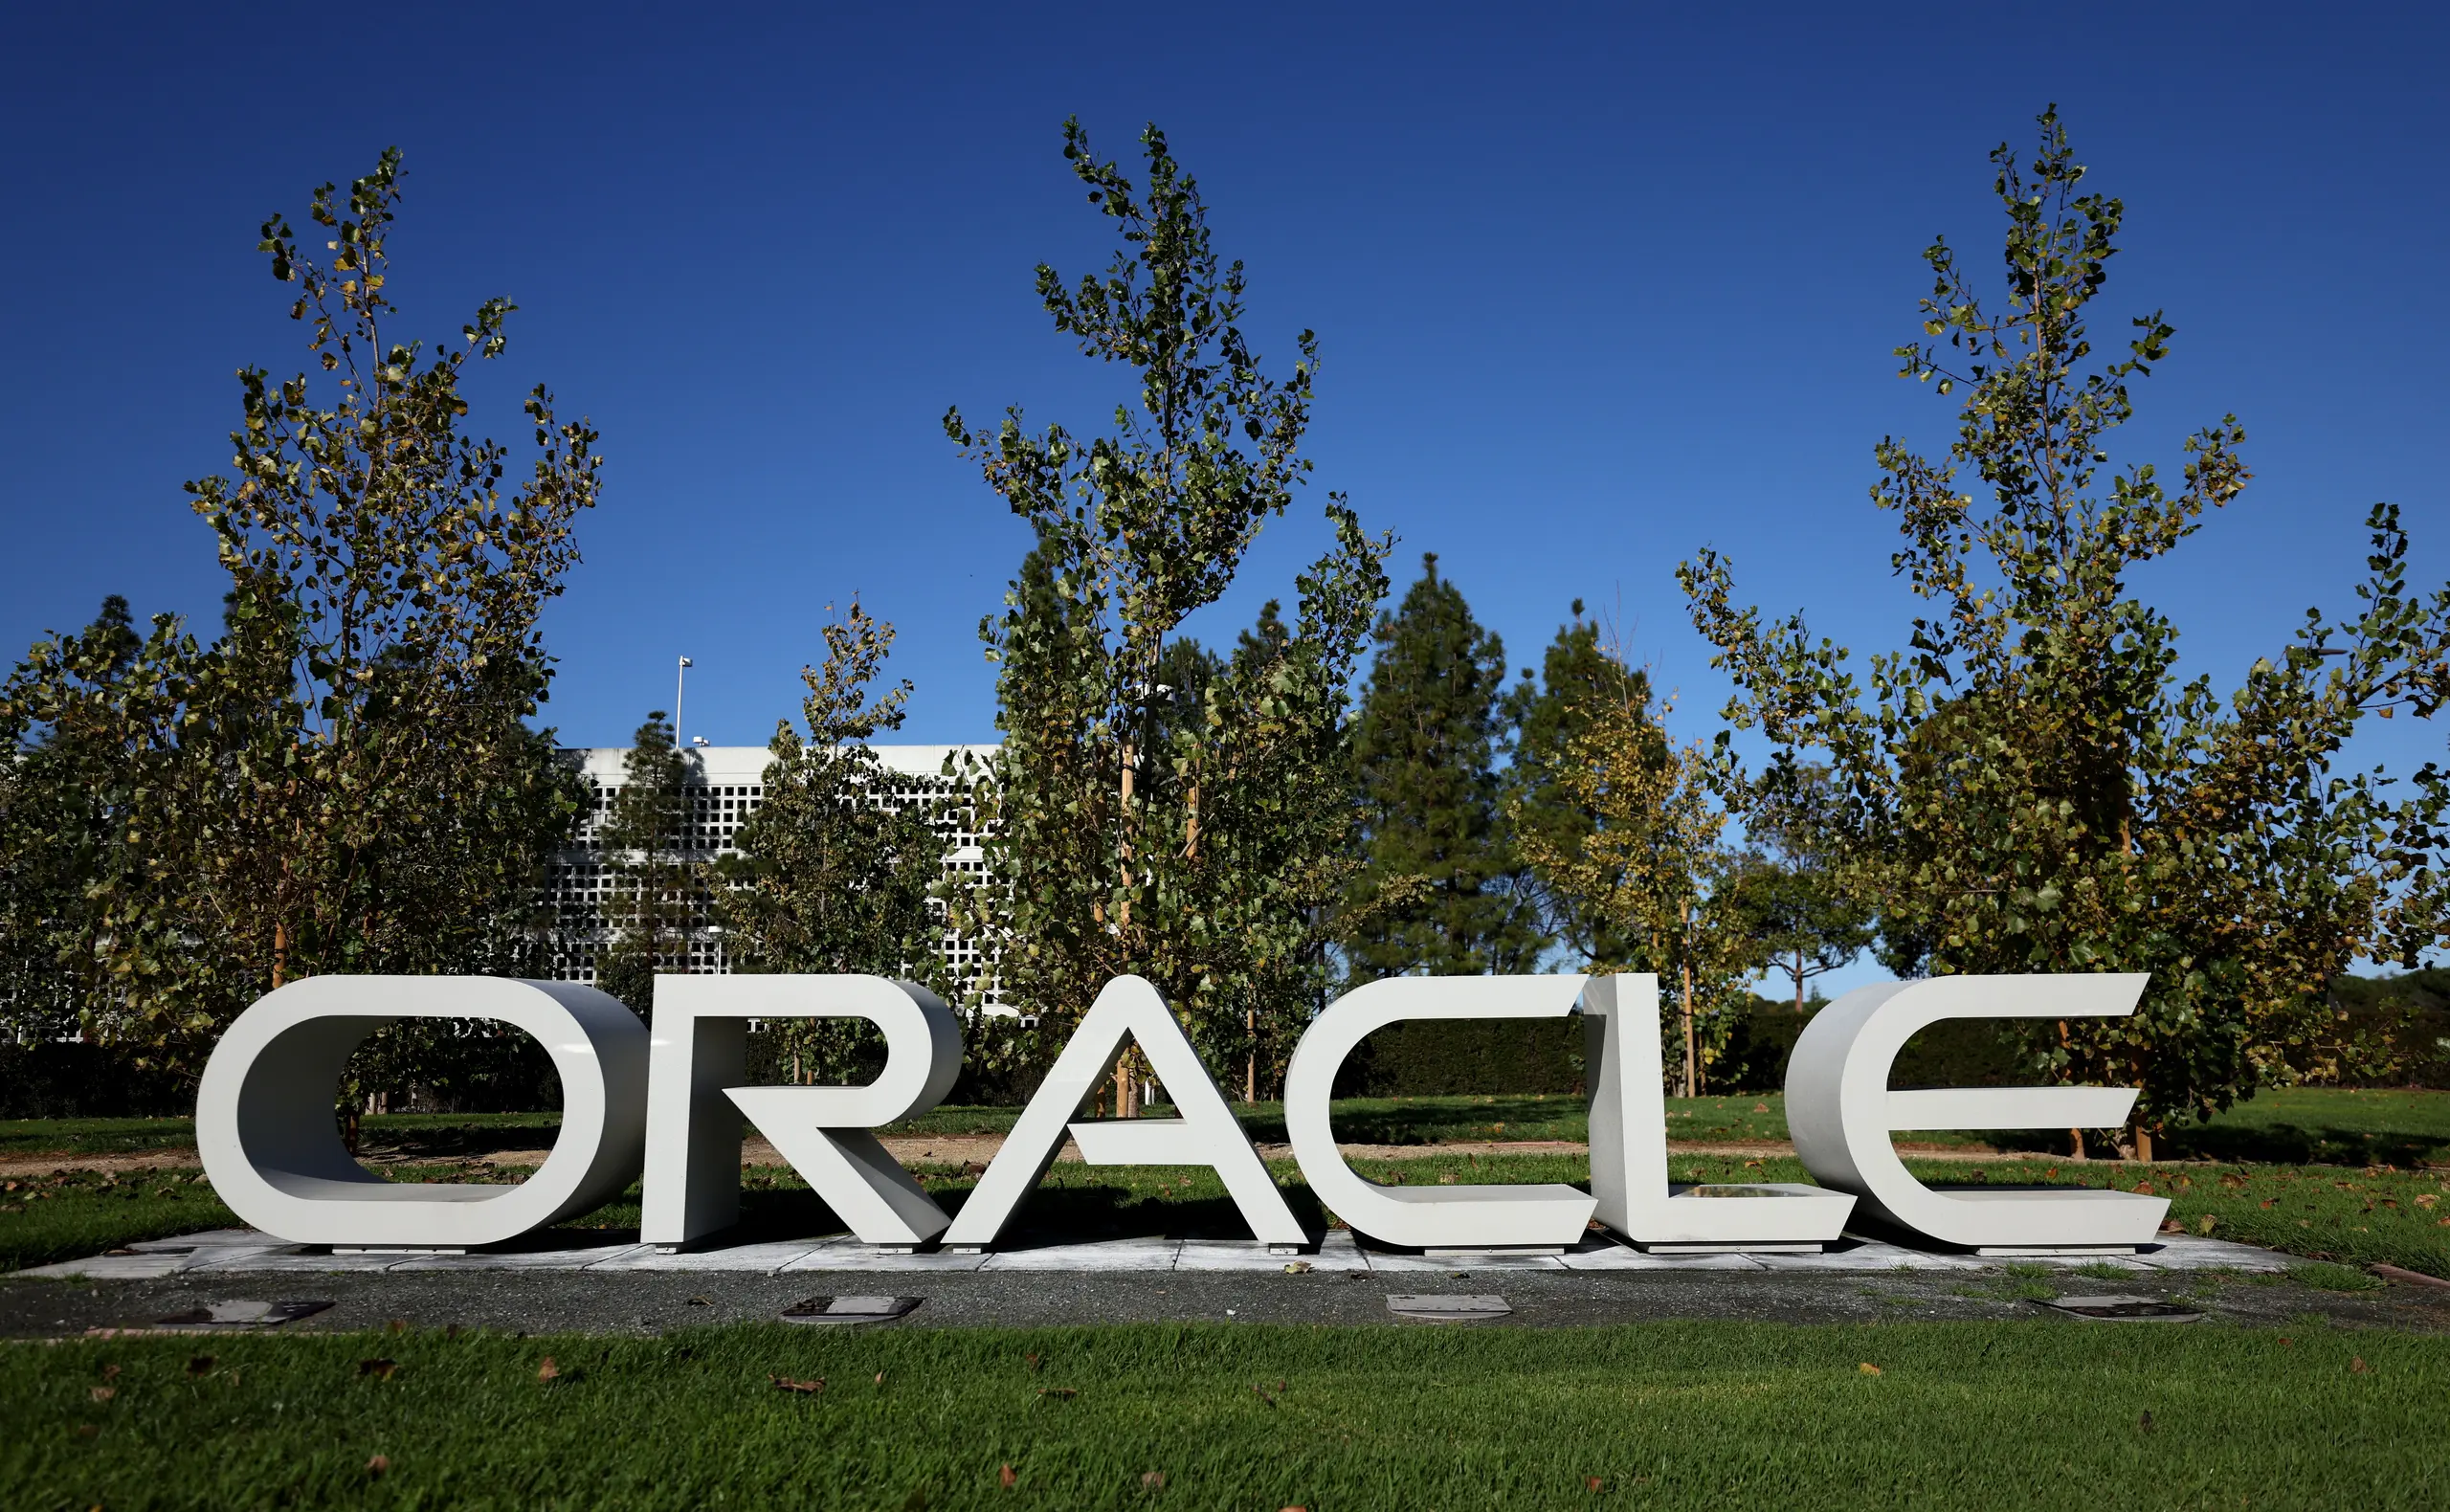 Der IT-Konzern Oracle gehört zu den größten Business Solutions Anbietern der Welt. 2021 wurde das Headquarter an einen neuen Campus in Austin, Texas verlegt.